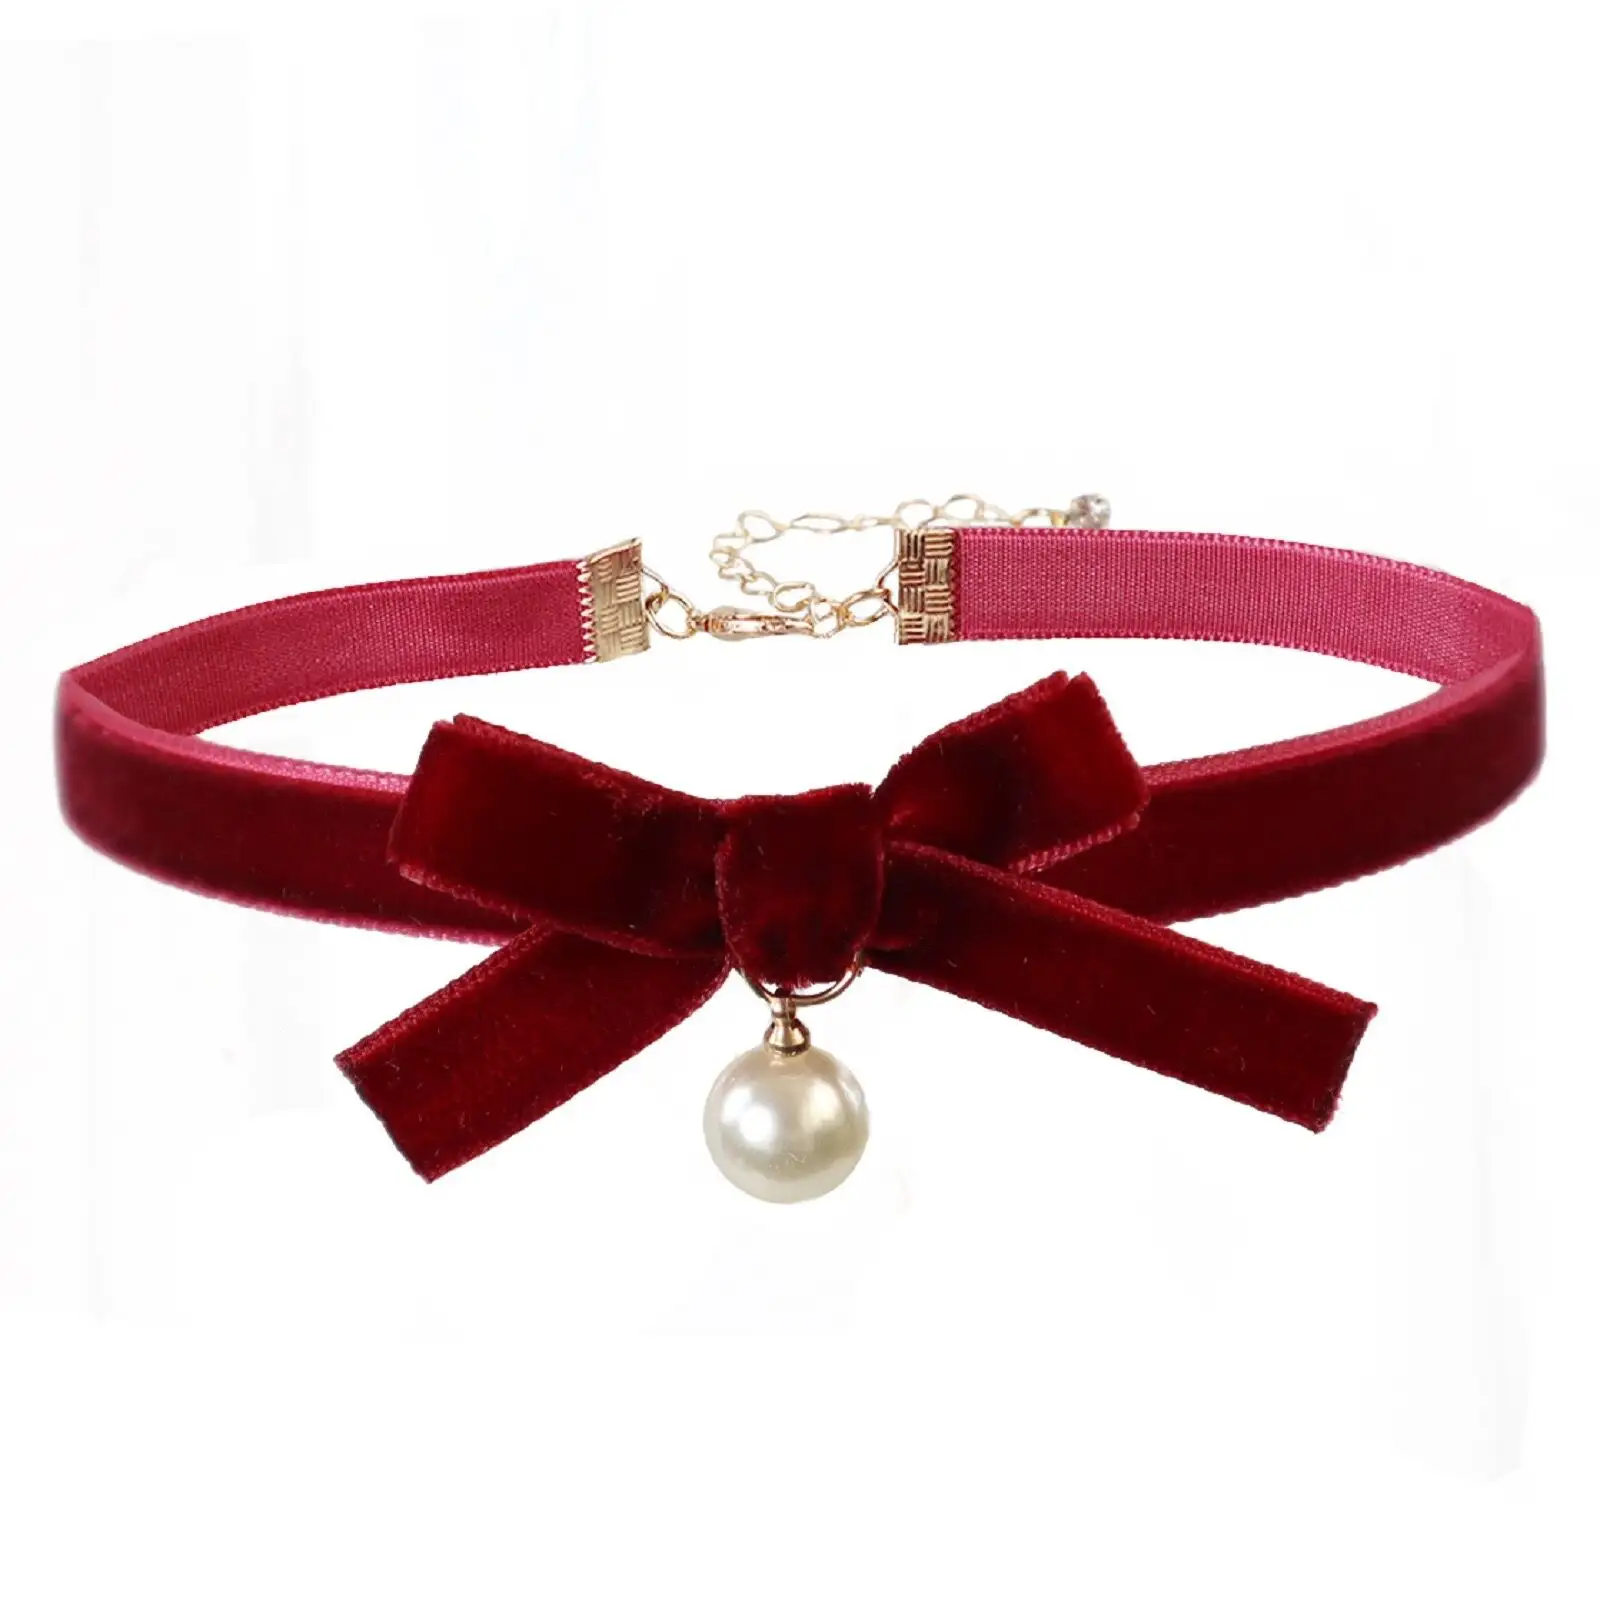 Aksesoris perhiasan antik baja tahan karat warna merah hitam bahan beludru busur kalung Choker natal wanita dengan mutiara